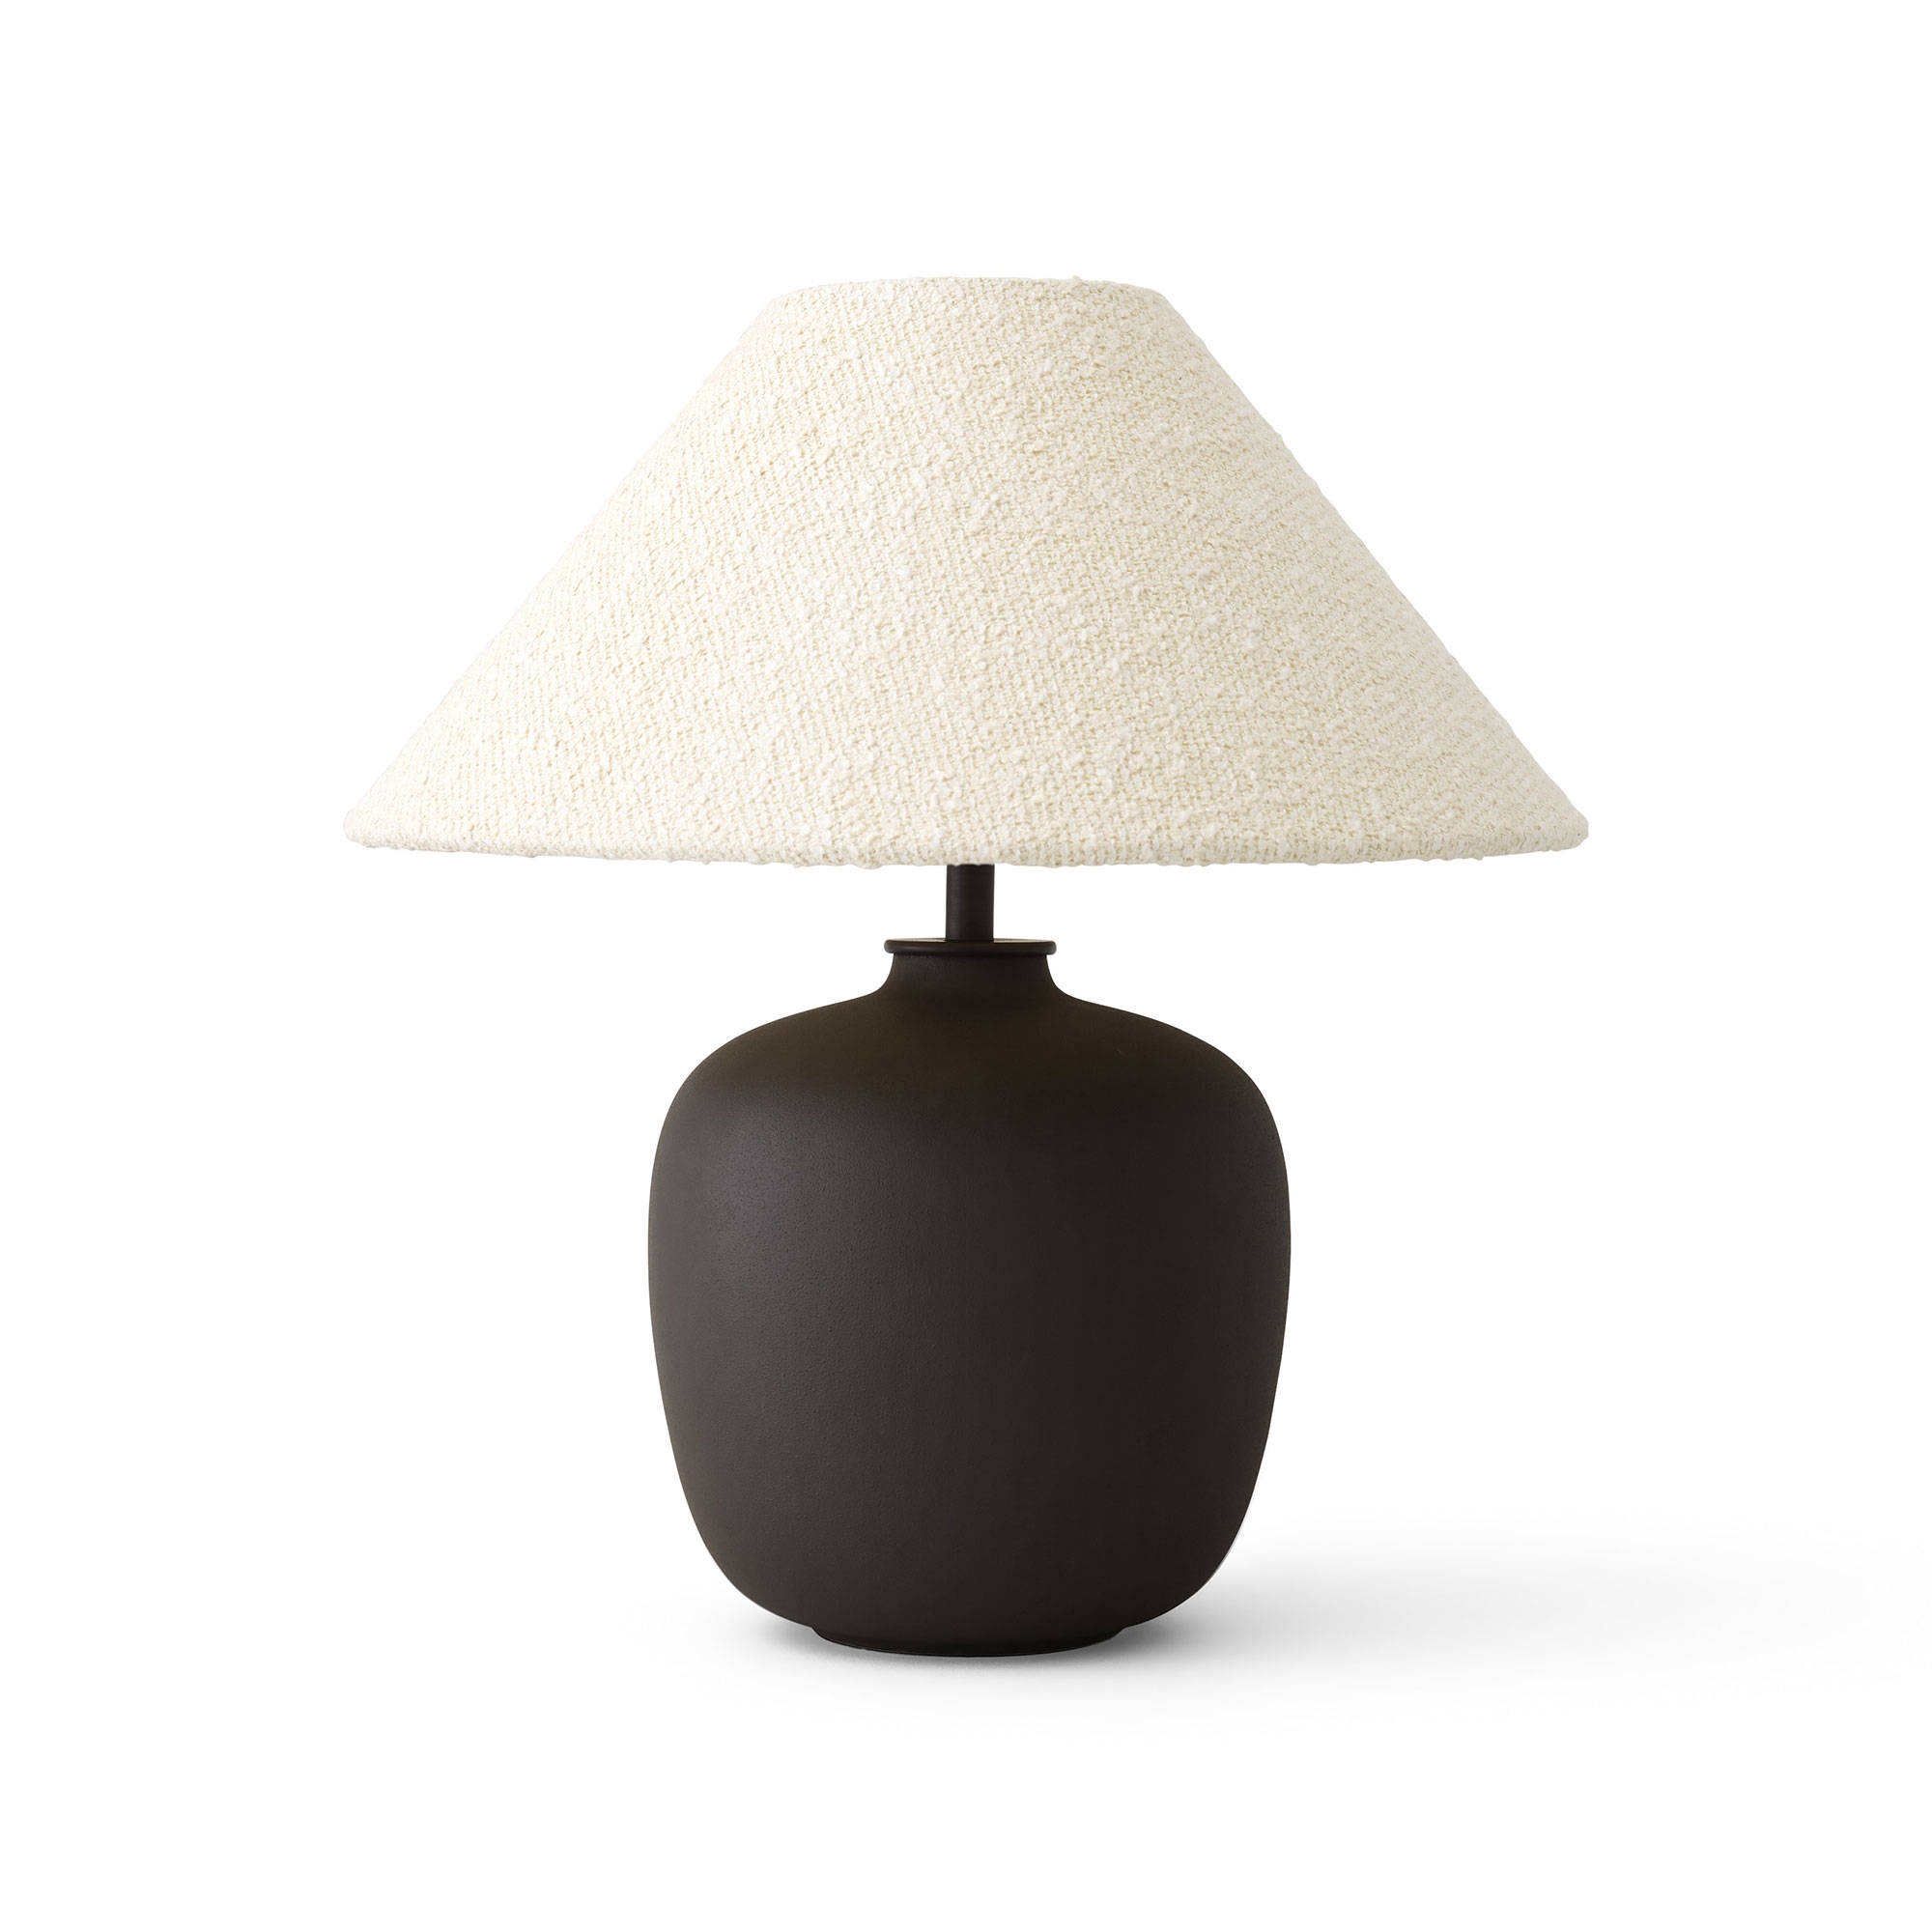 MENU Torso 37 Table lamp Oceano/Snow Limited Edition